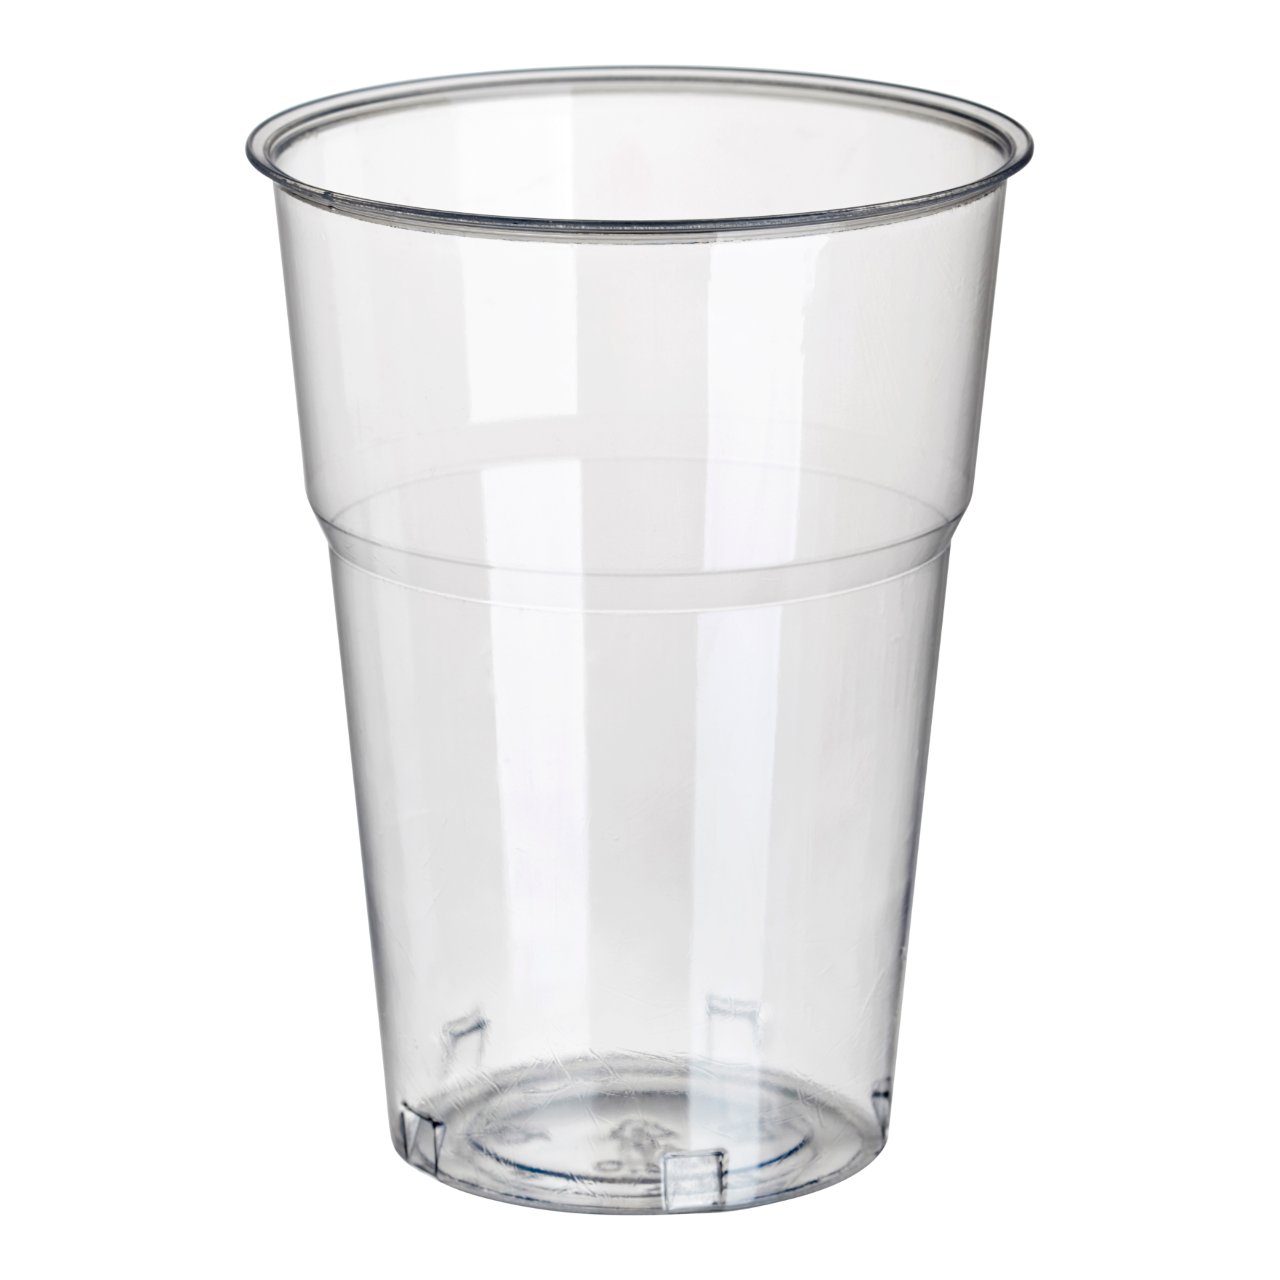 Drinkbeker  voor koude dranken 11 cm  9.5 cm, 0,3 L glashelder met schuimkraag